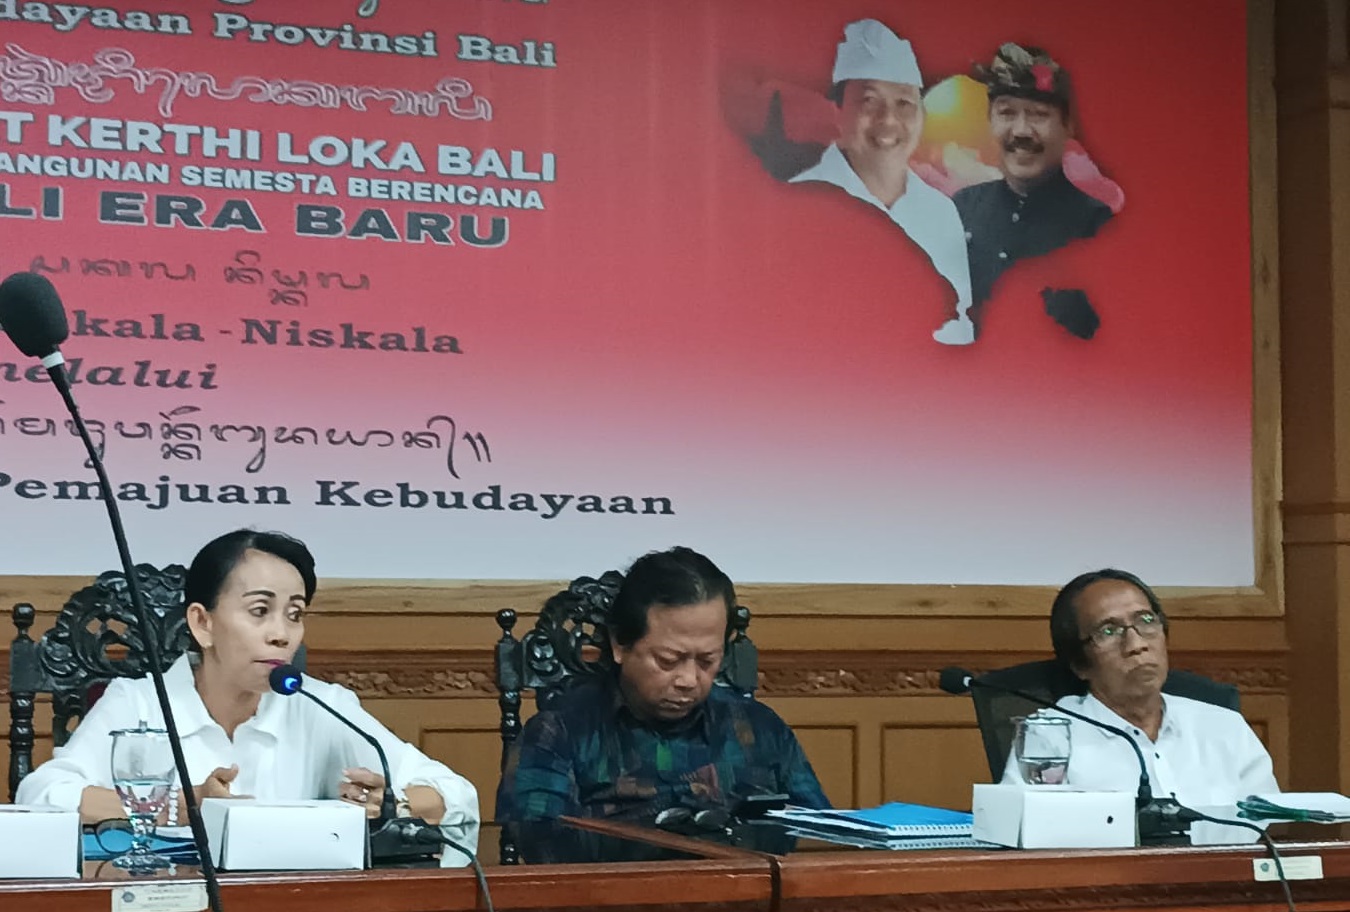 RAPAT Persiapan Publikasi dan Promosi PKBXLV dan FSBJ V Tahun 2023 pada Rabu (3/5/2023) di Kantor Dinas Kebudayaan Provinsi Bali. Foto: rap